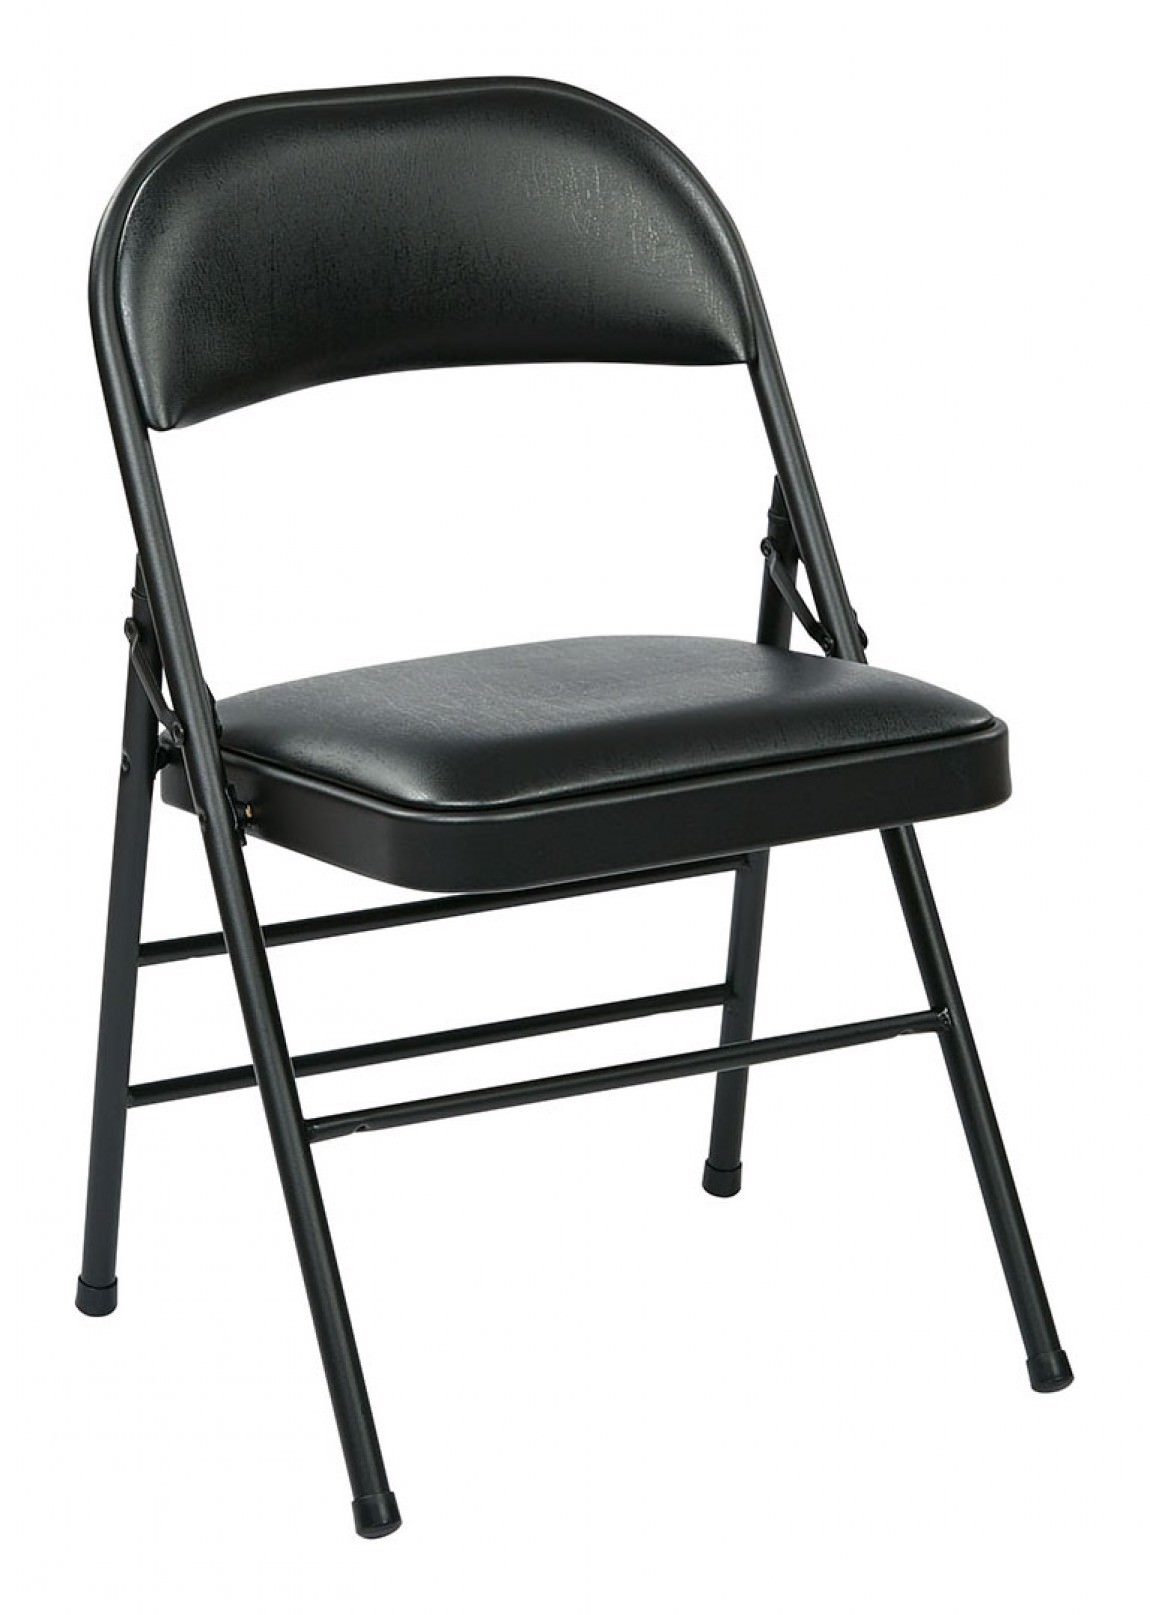 https://madisonliquidators.com/images/p/1150/24905-padded-folding-chair-4-pack-1.jpg